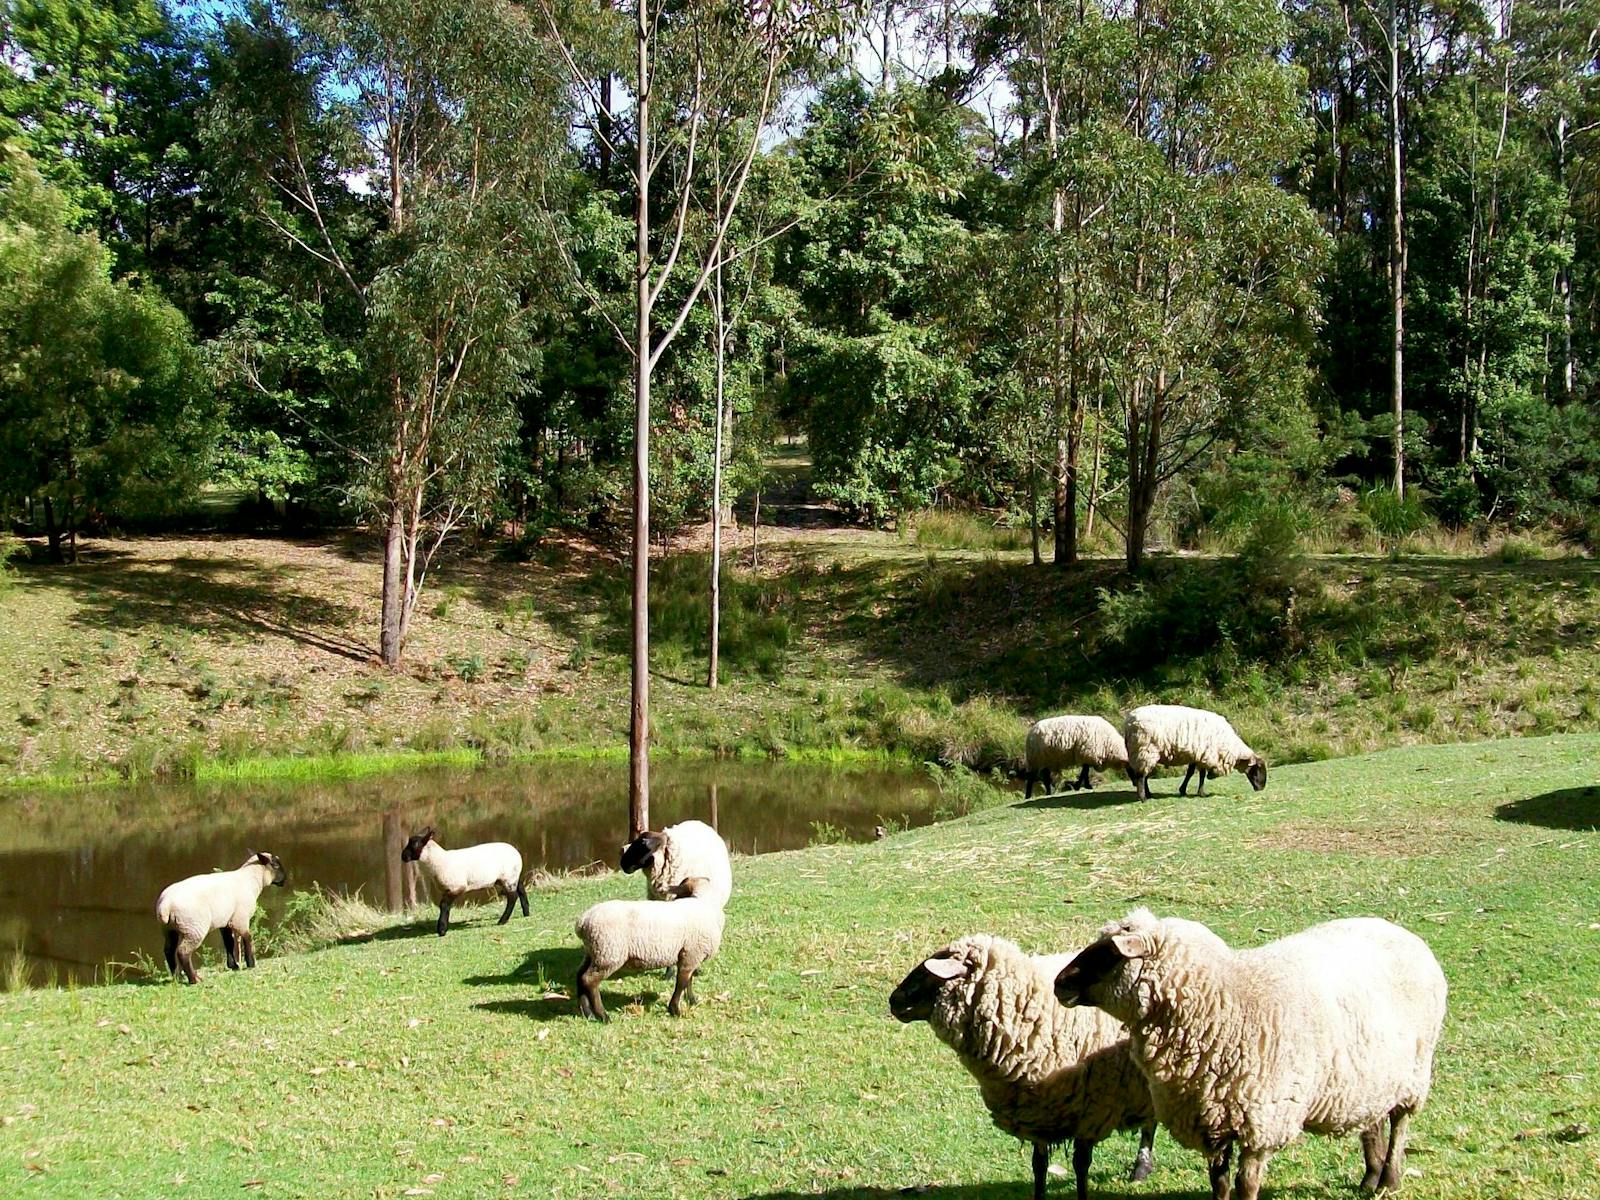 Sheep around the dams.